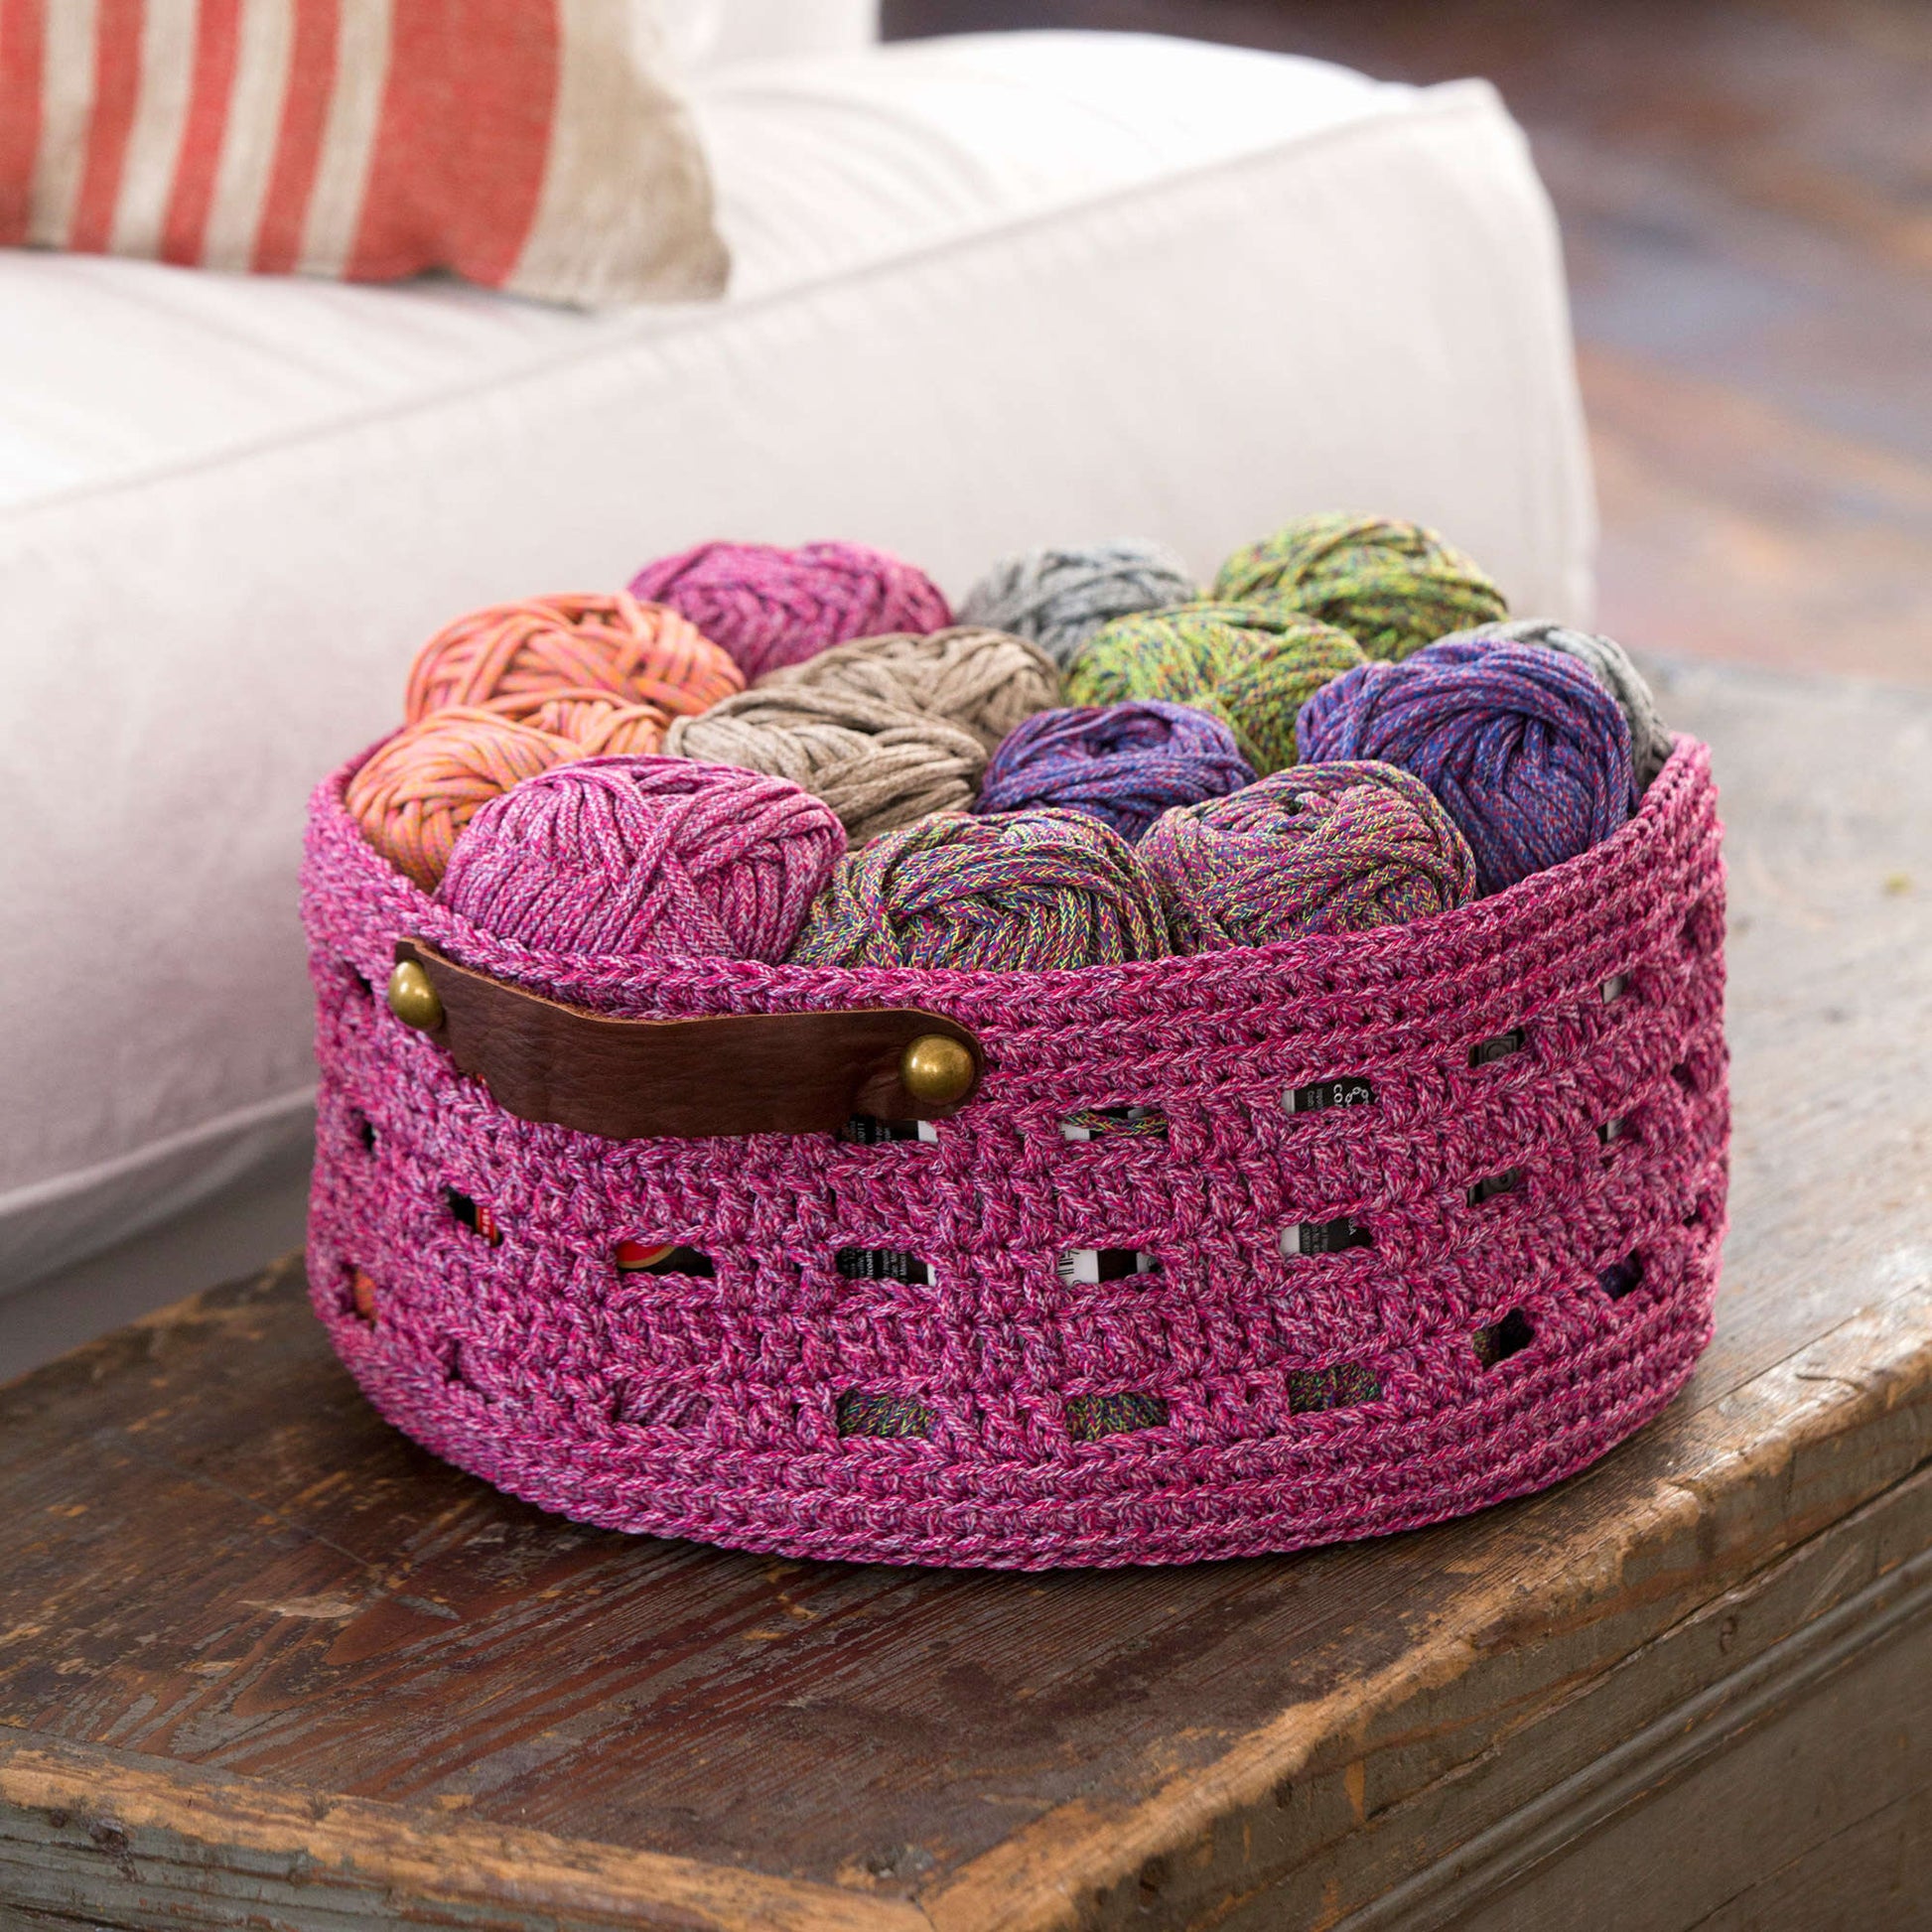 Free Red Heart Bricks Basket Crochet Pattern